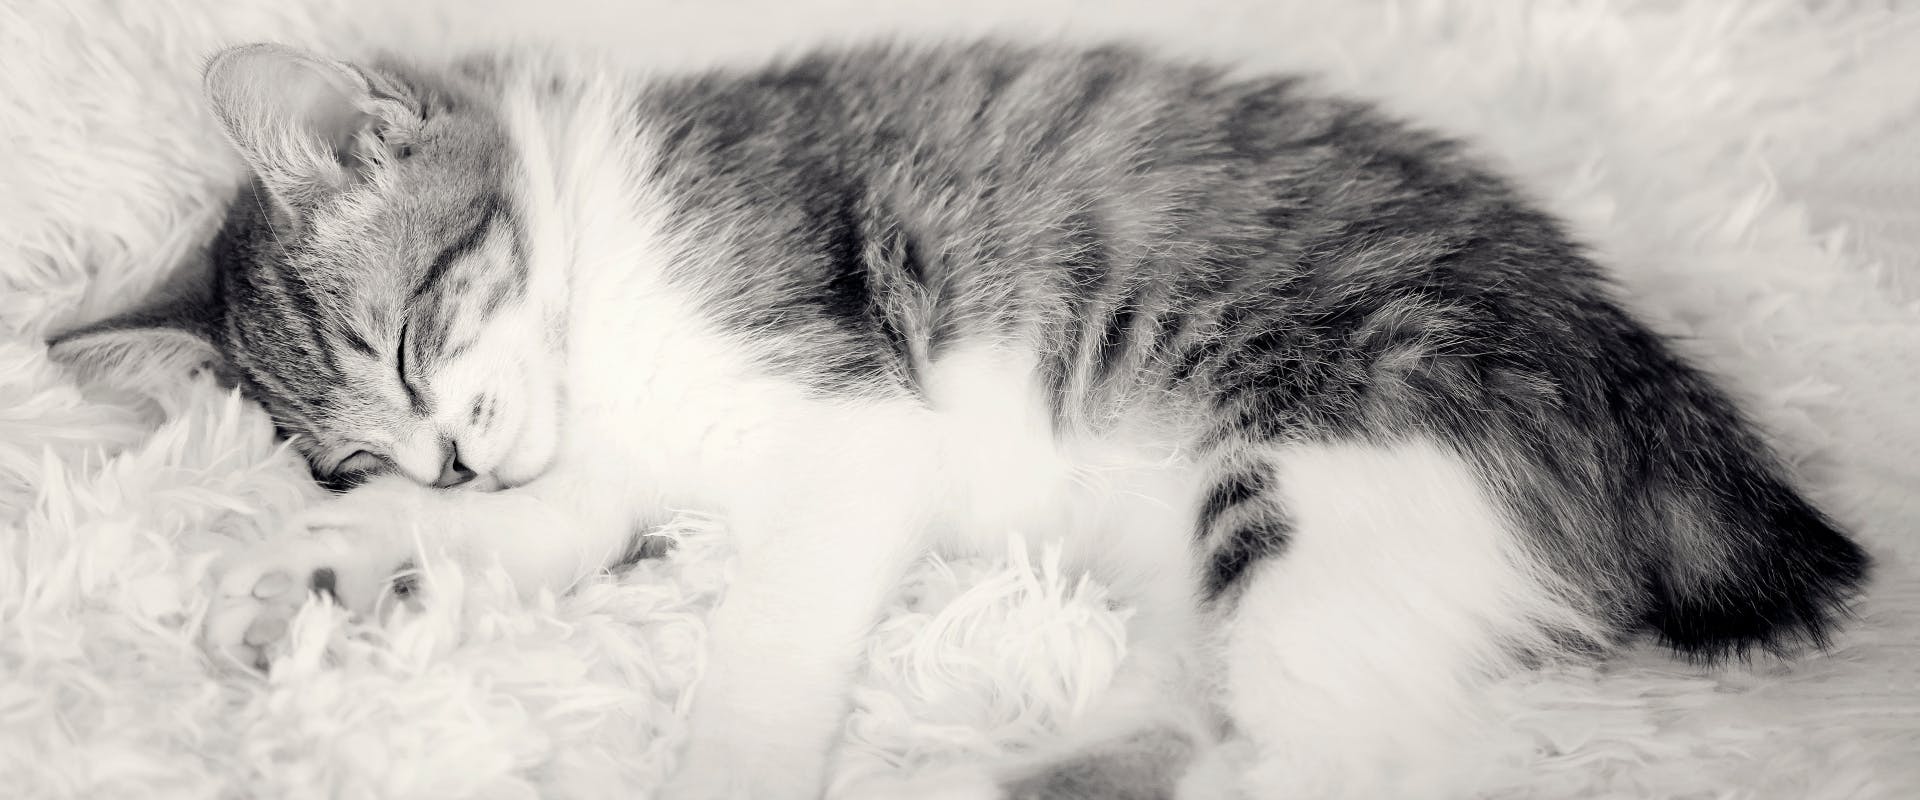 a sleeping Manx kitten